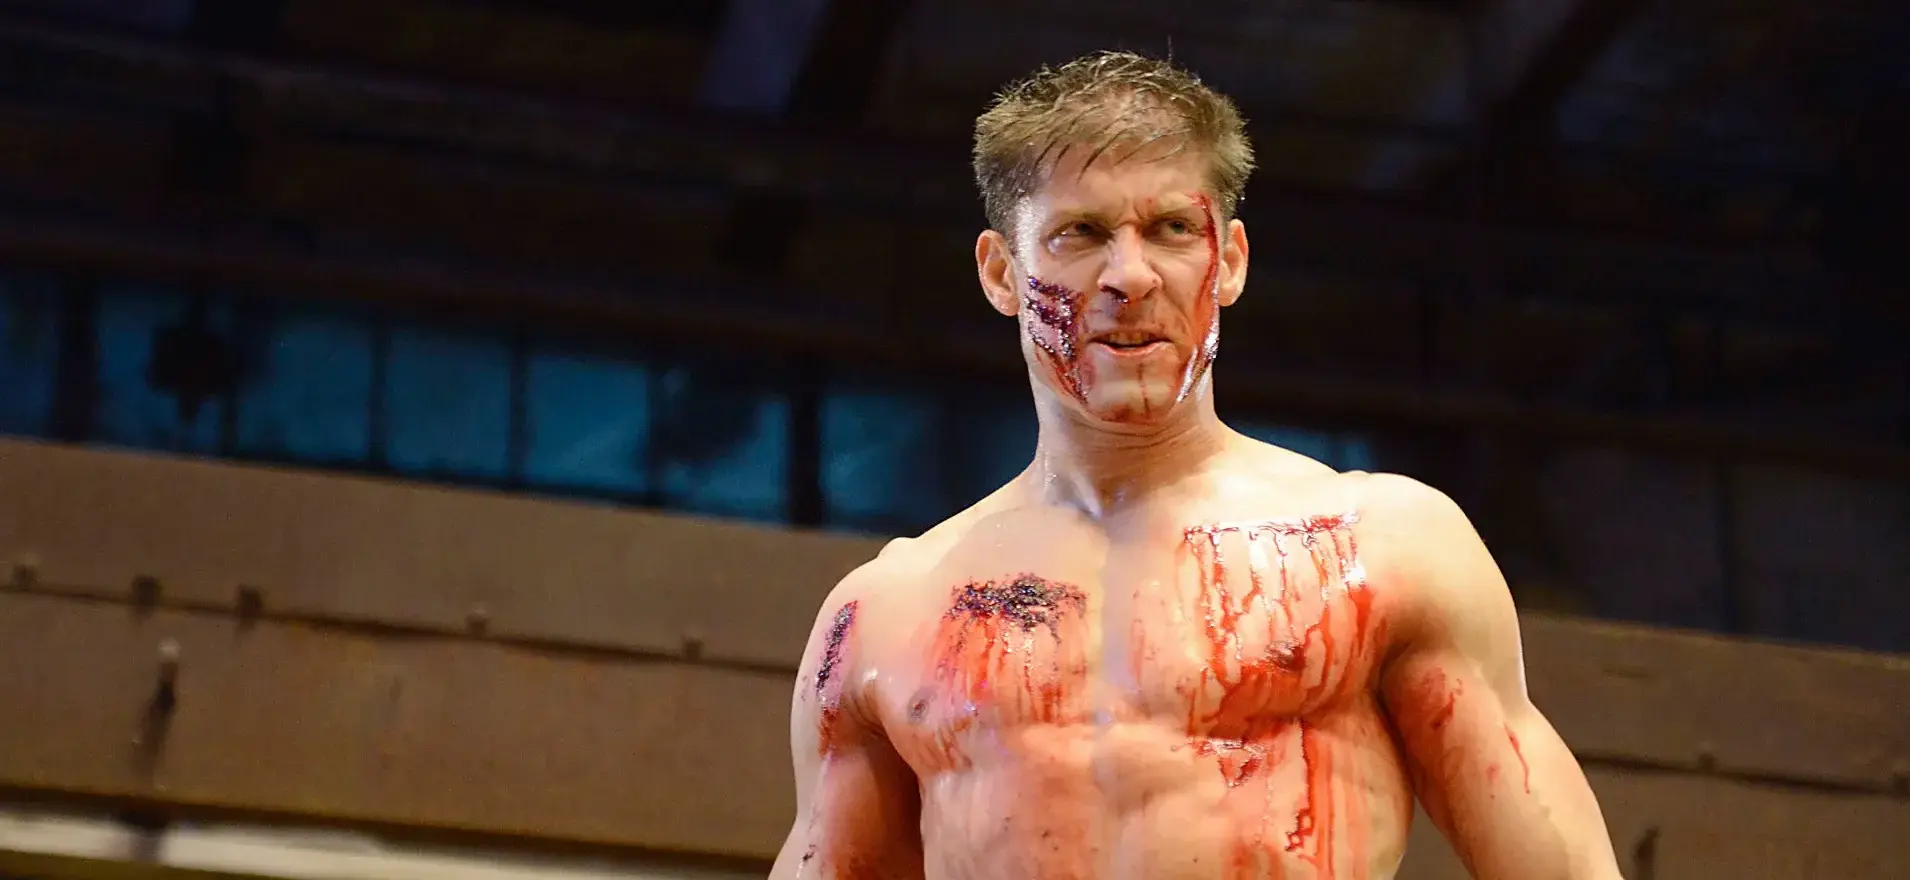 ‘Kickboxer’ Movie Casting Huge MMA Stars for Trilogy Closer, ‘Armageddon’